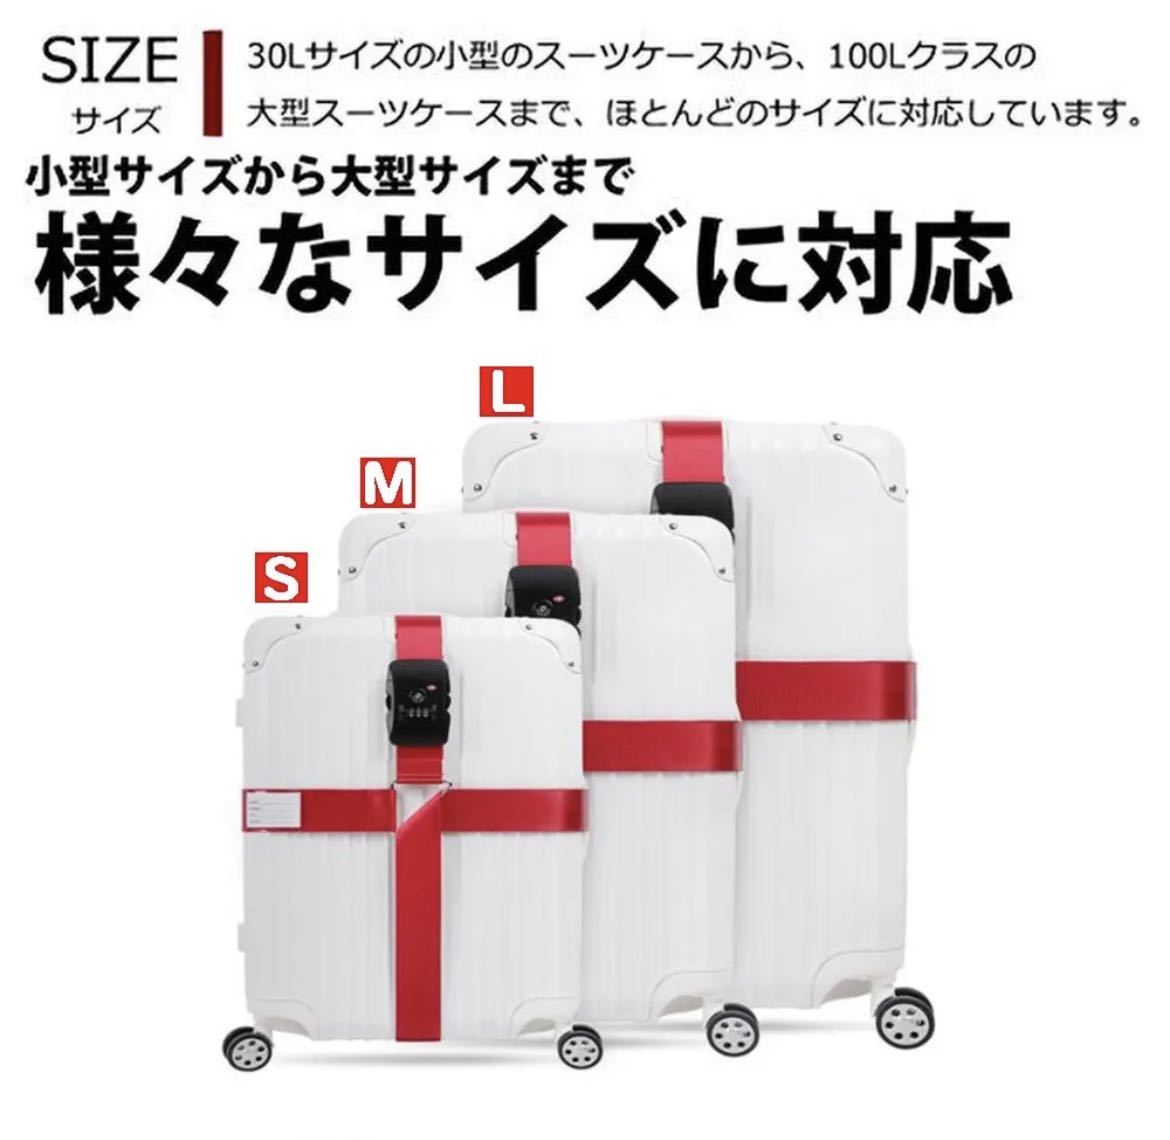 【アップグレード版】スーツケースベルト ロック付き 荷物崩れ防止 調整可能 固定ベルト ダイヤル式_画像6